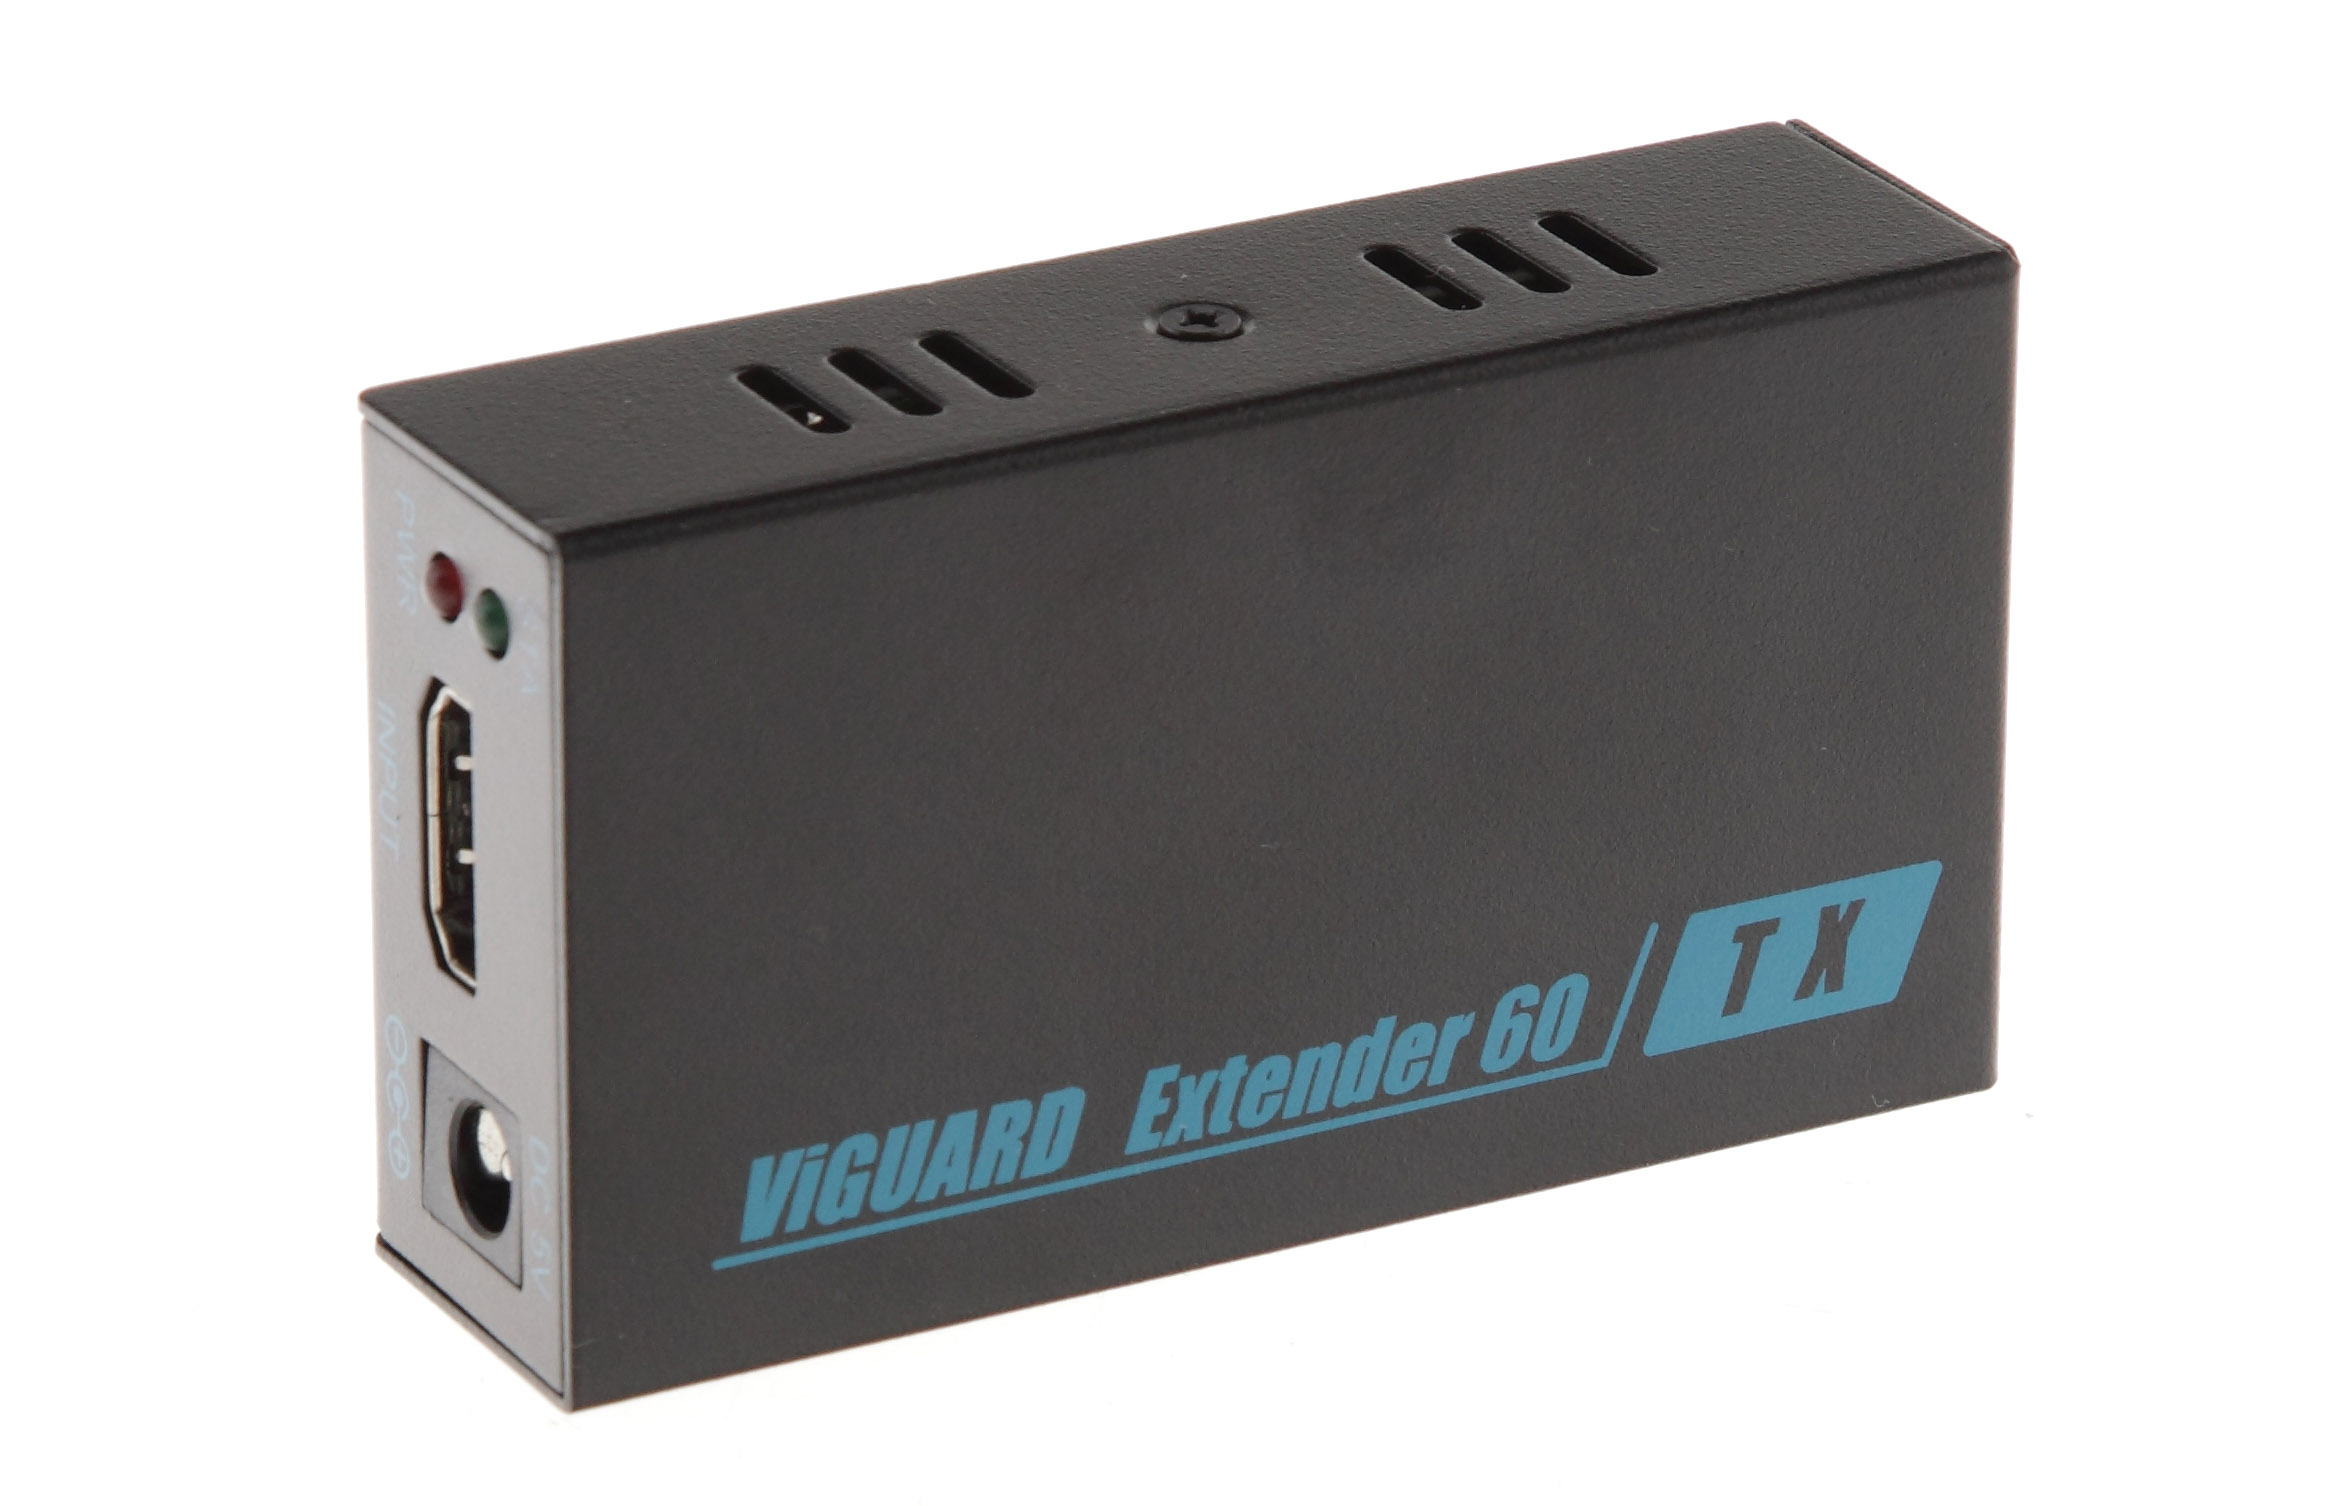 VIGUARD EXTENDER 60 HDMI экстендер